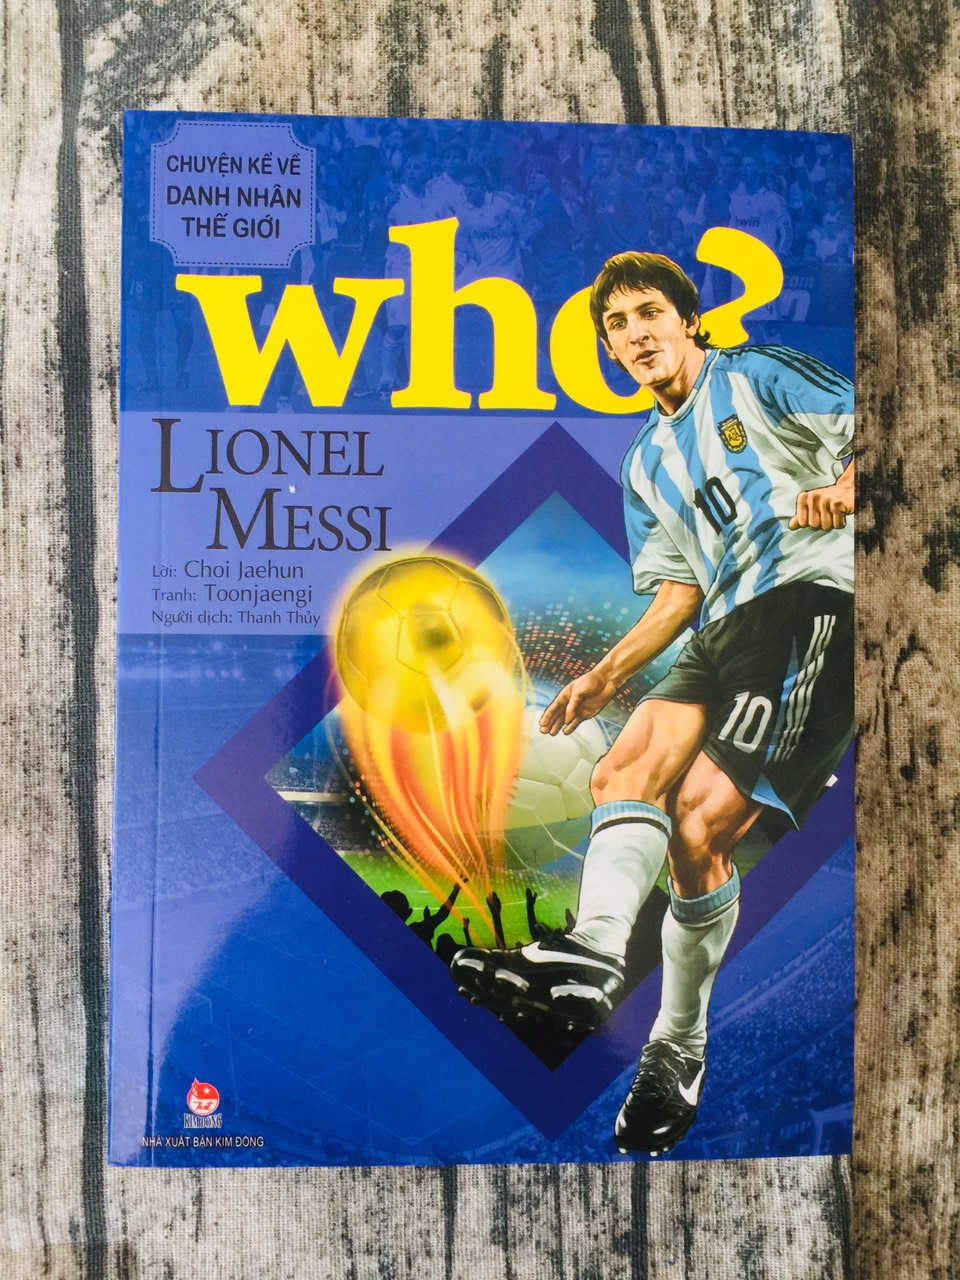 Who? Chuyện Kể Về Danh Nhân Thế Giới: Lionel Messi